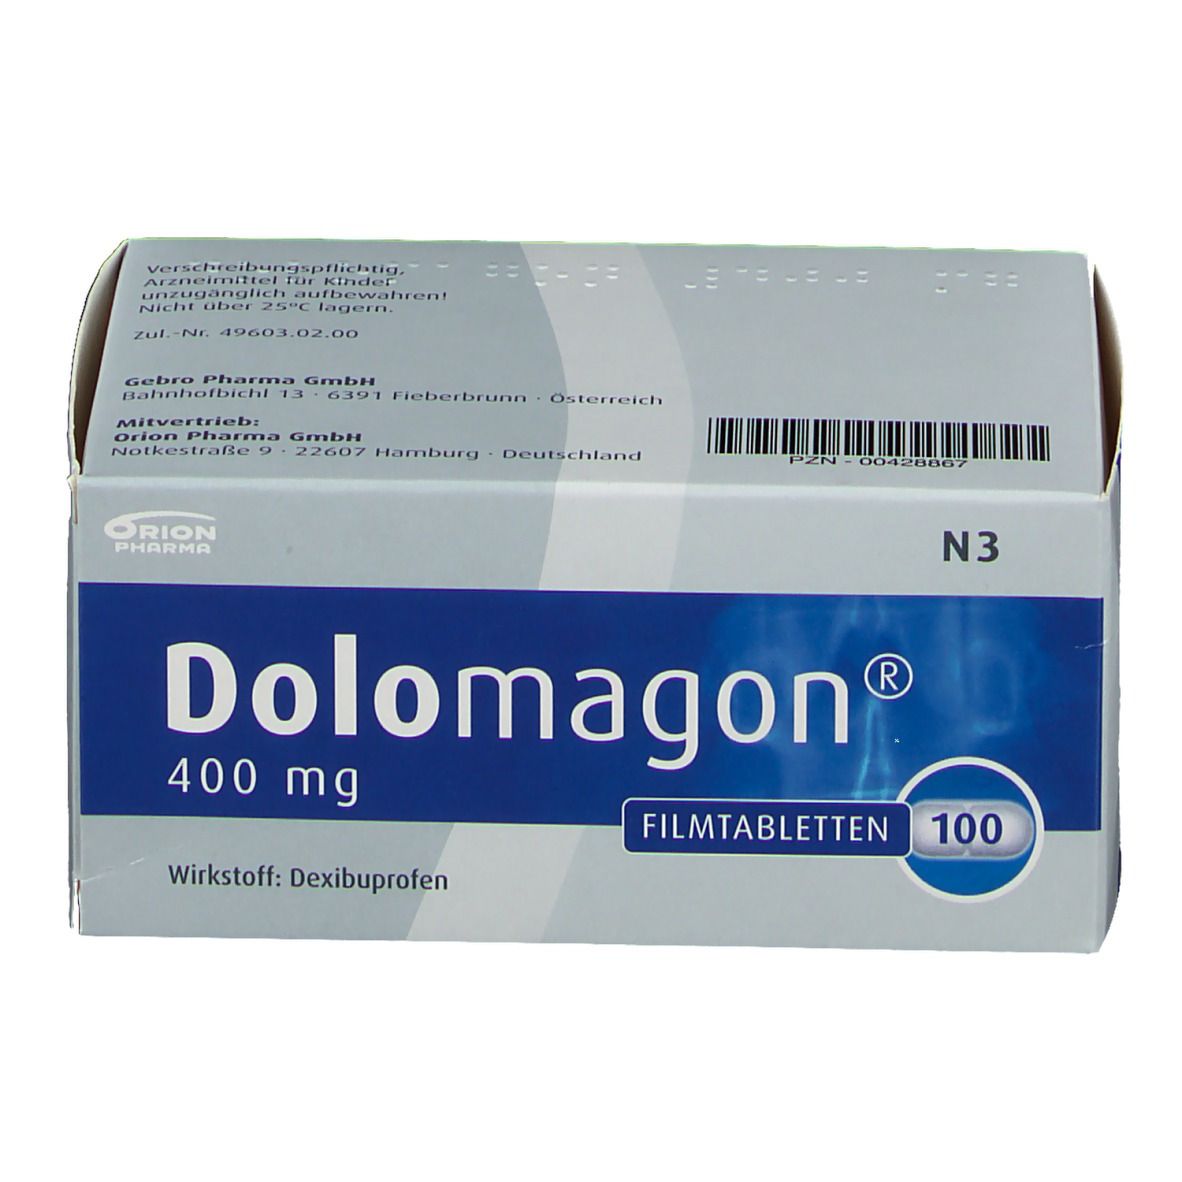 DOLOMAGON 400 mg Filmtabletten